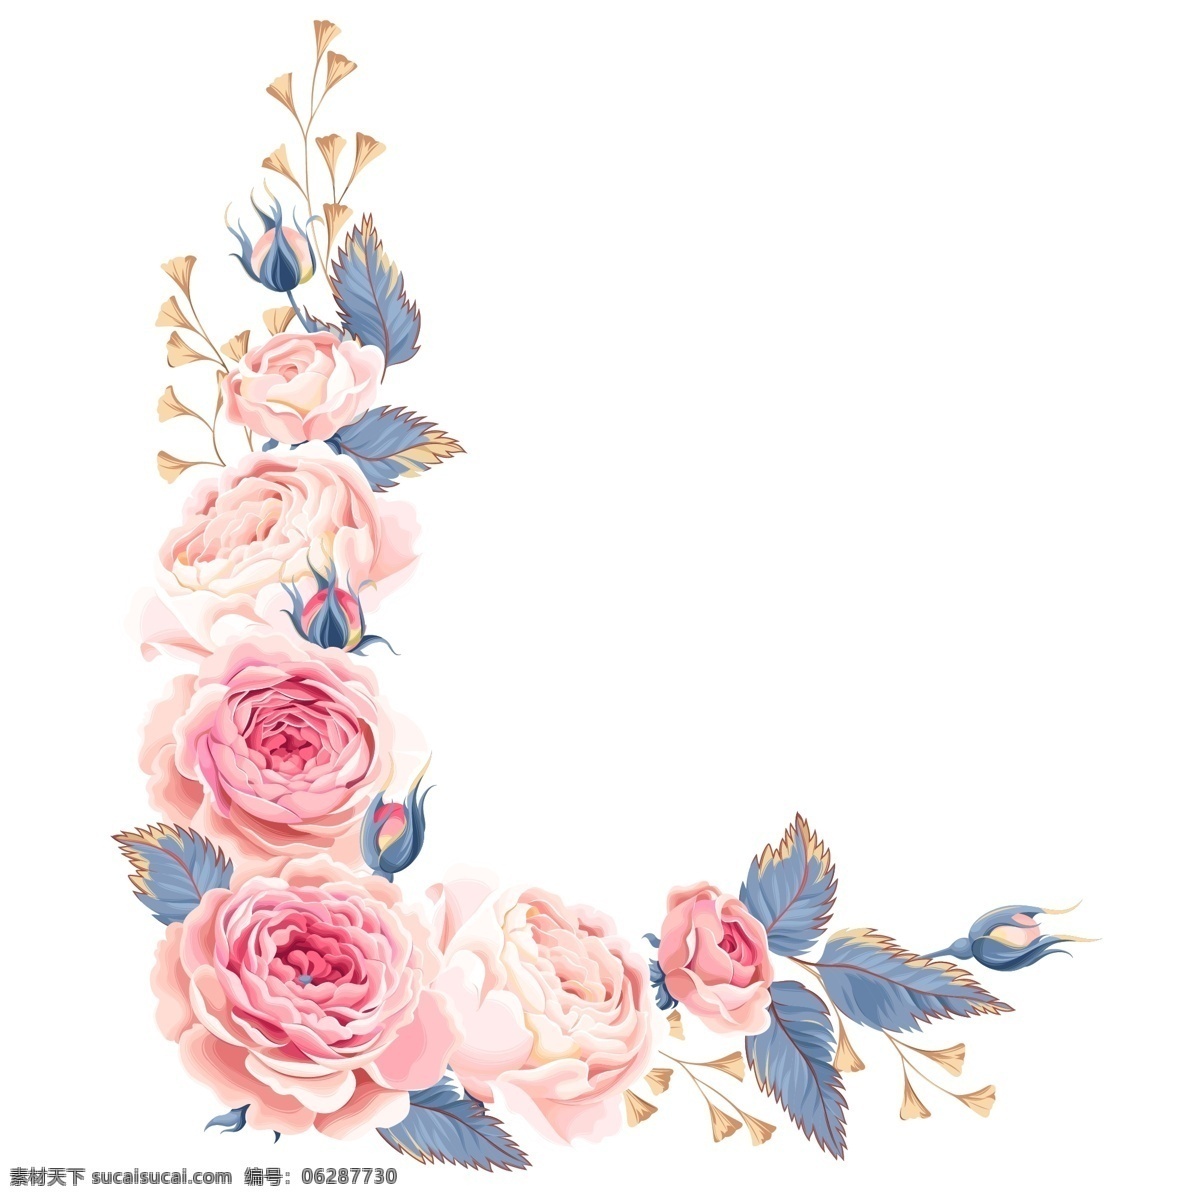 漂亮 欧美 风 花朵 时尚 唯美 欧美风 玫瑰花 装饰素材